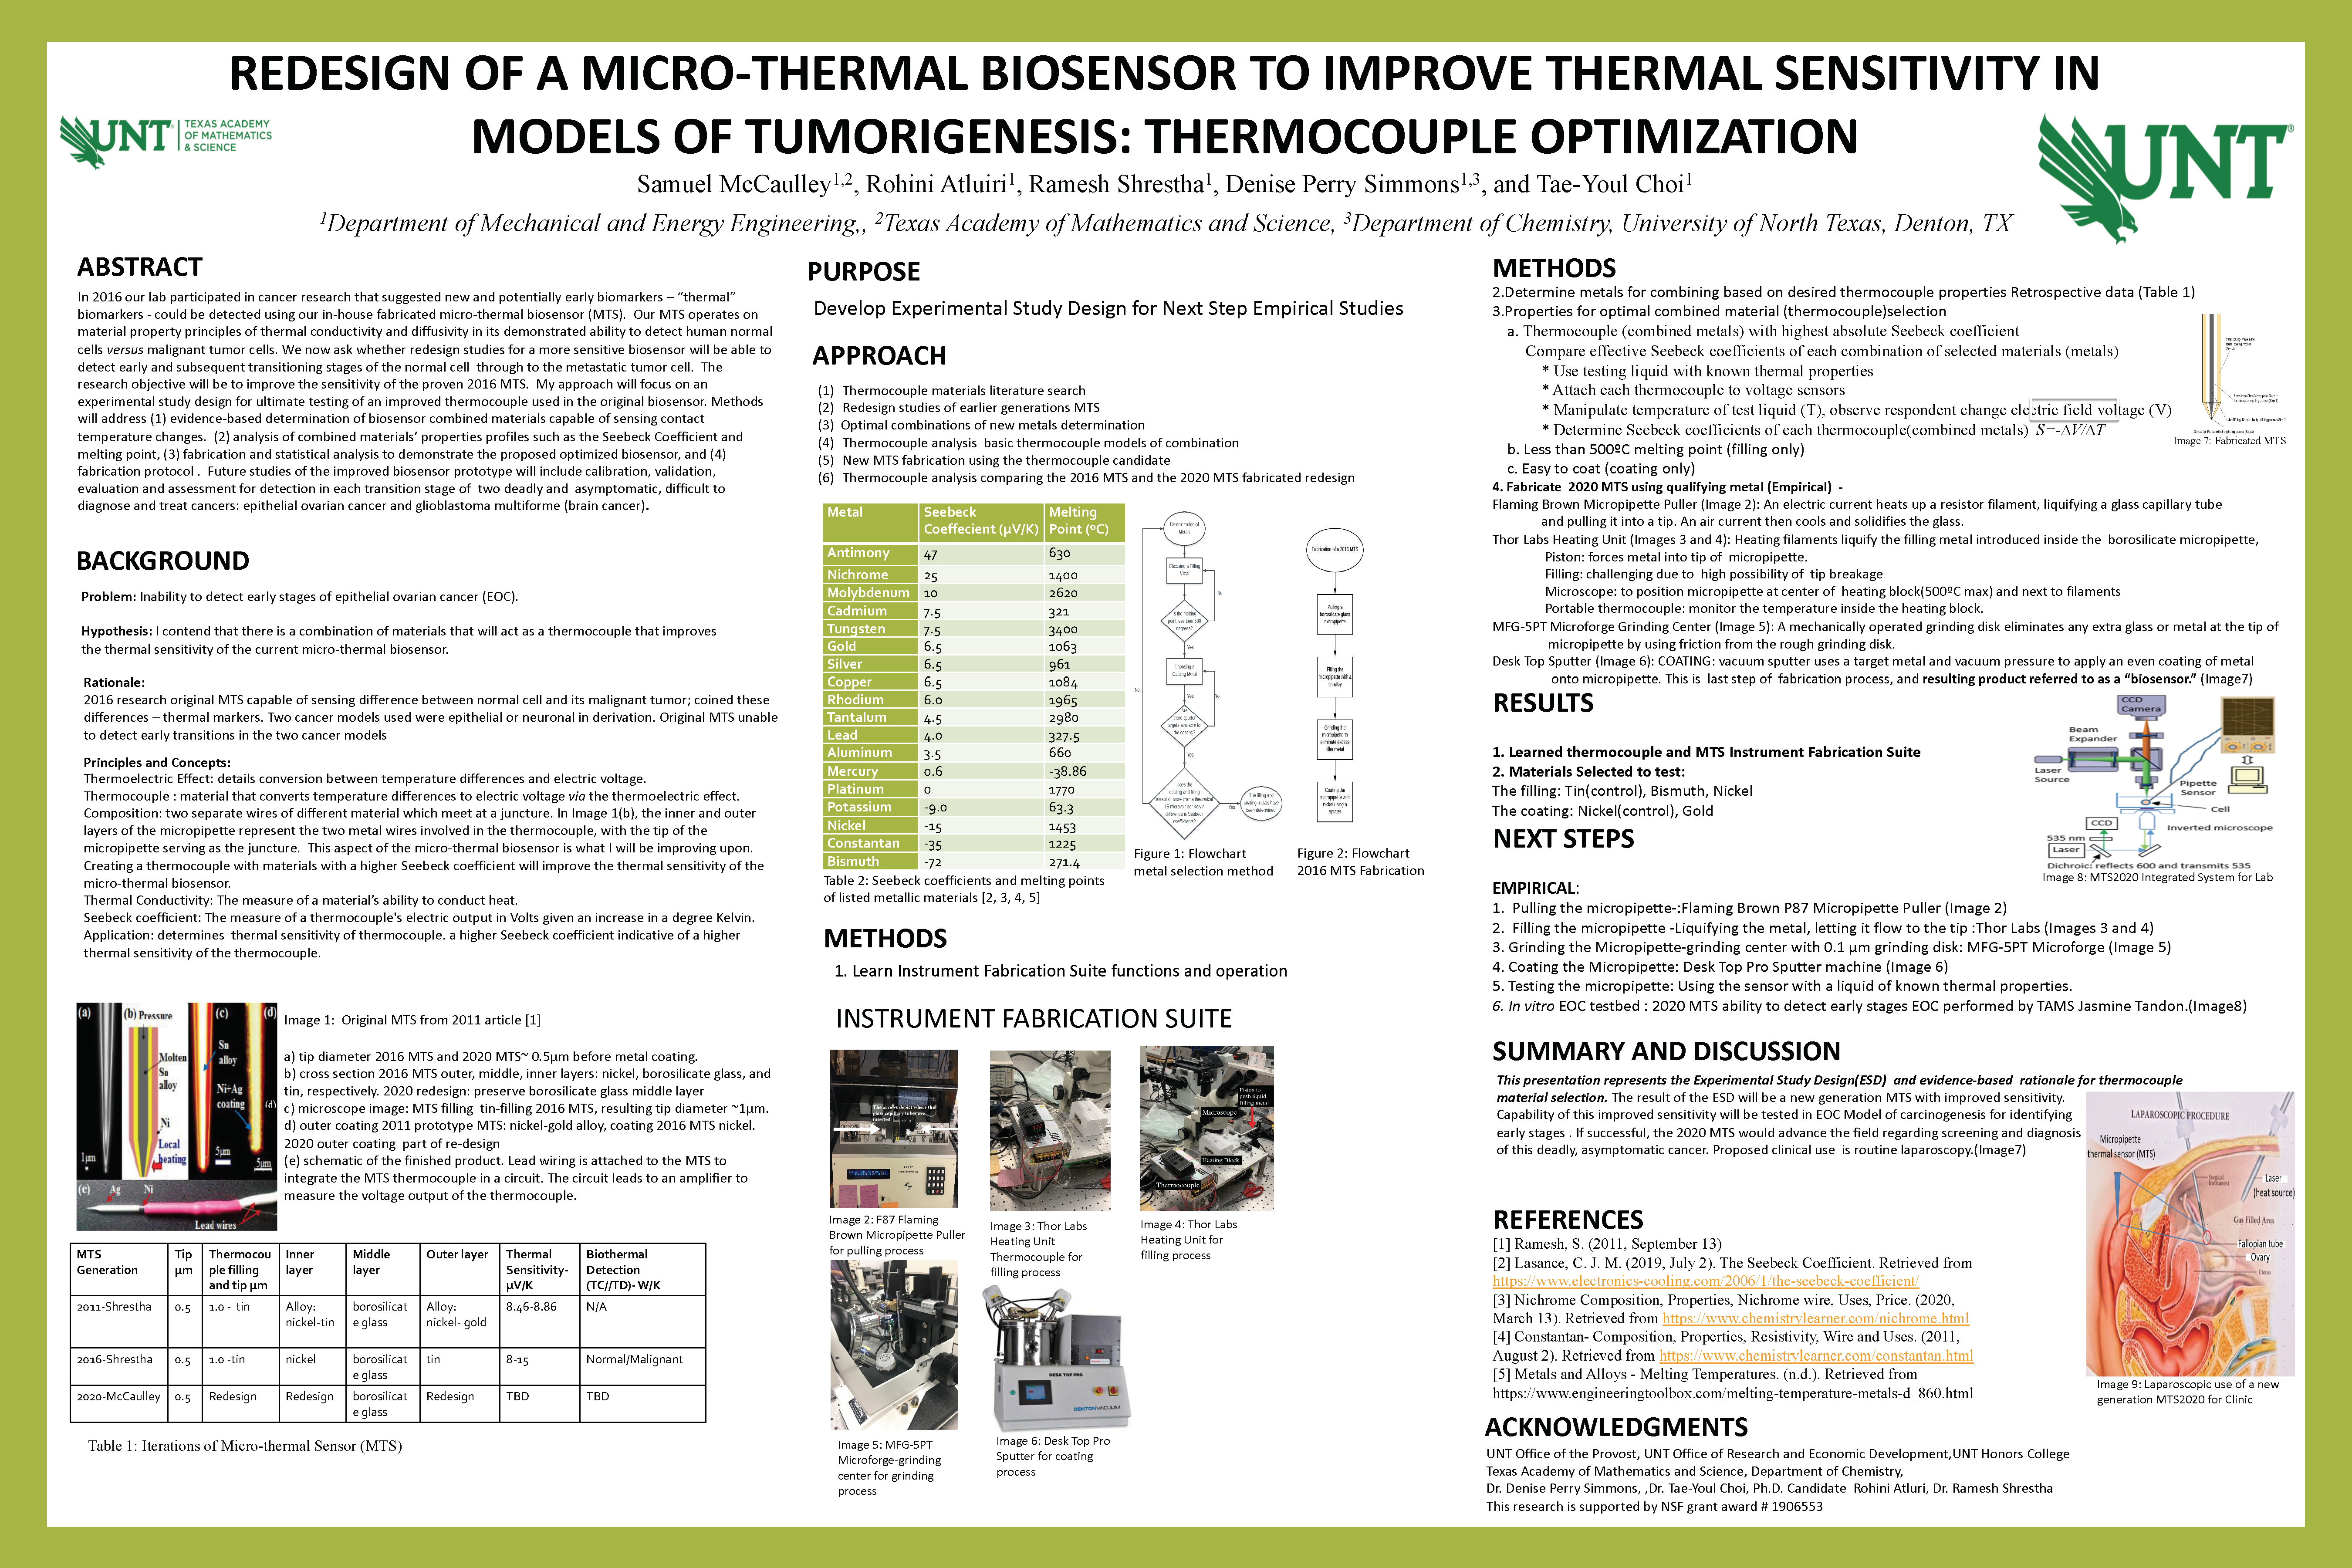 Redesign of Micro-thermal Biosensor to Improve Thermal Sensitivity in Models of Tumorigenesis